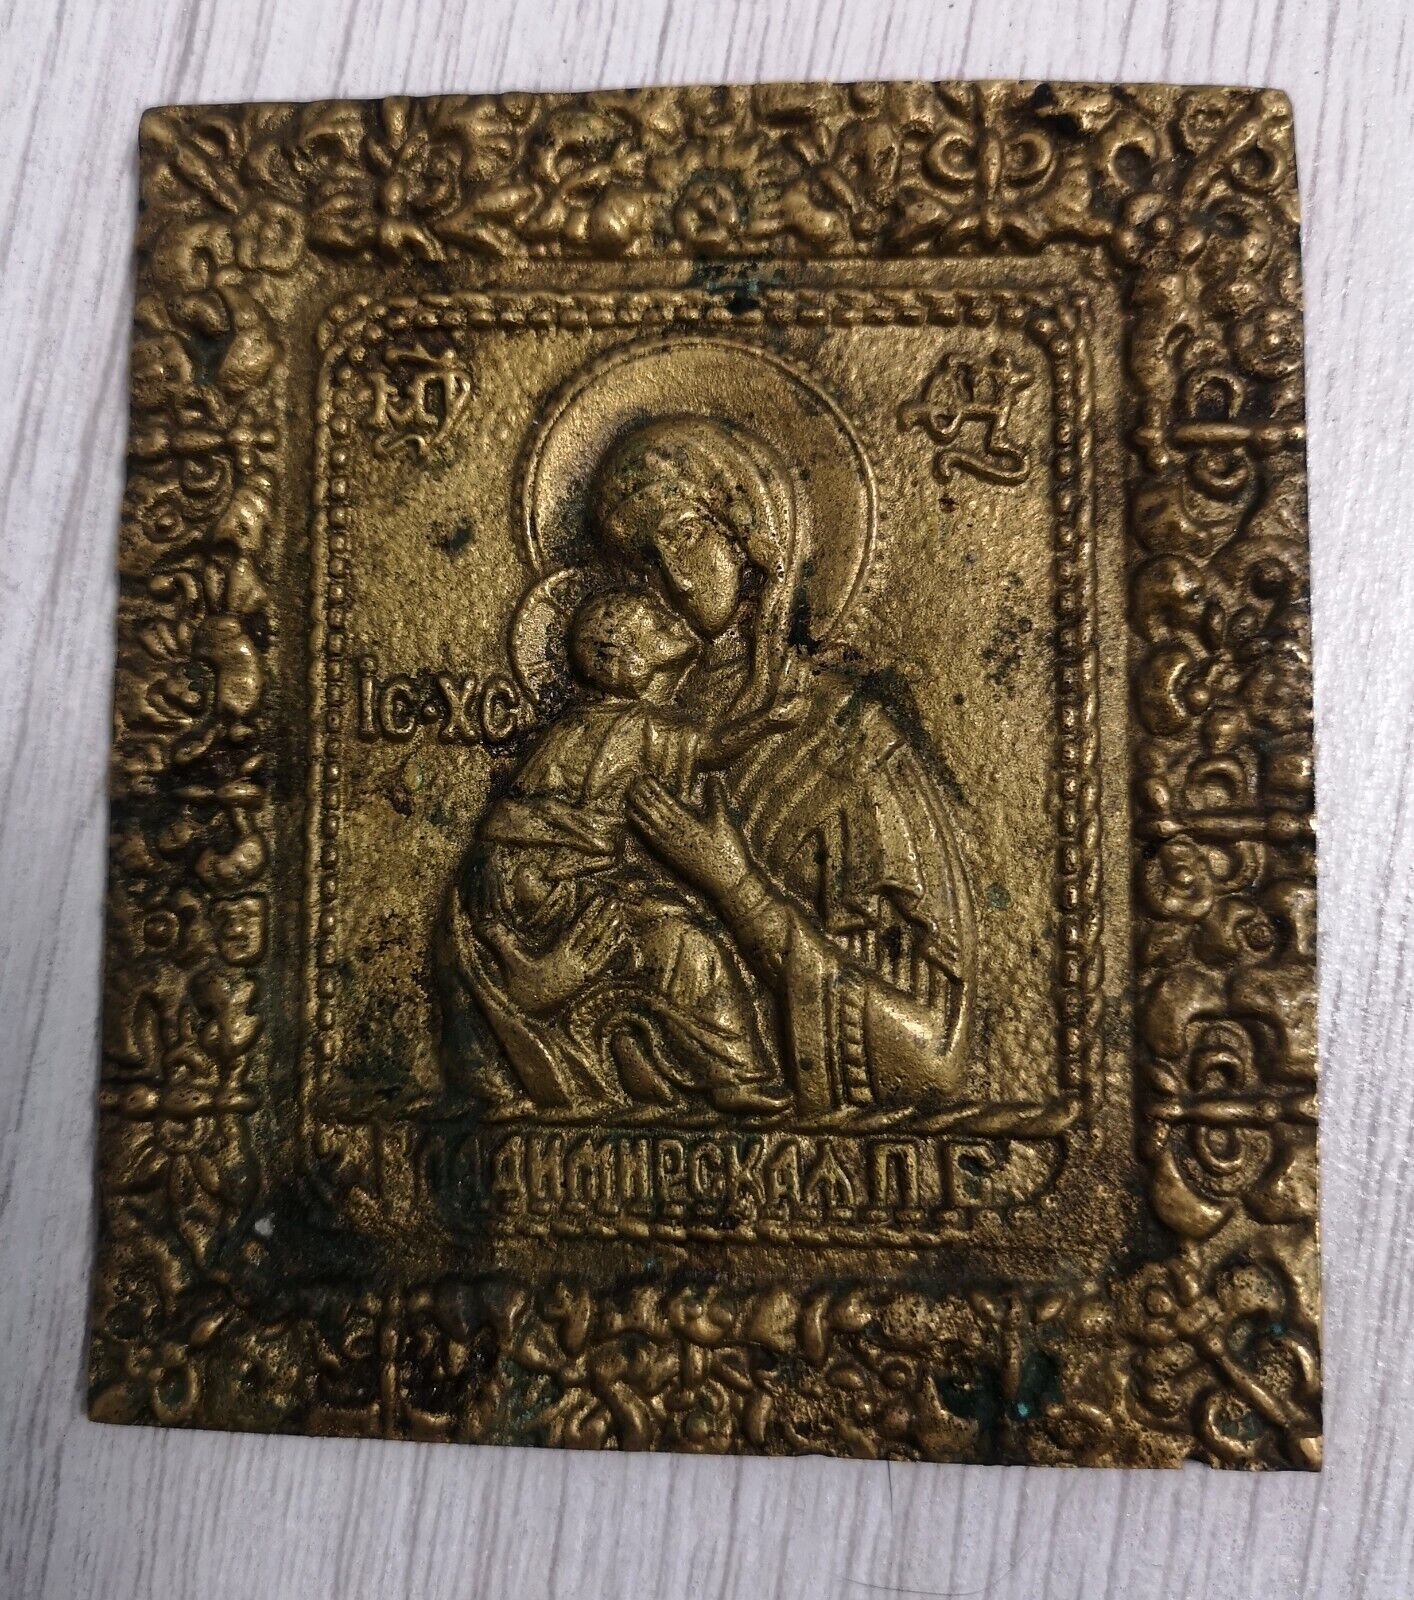 Very rare Antique bronze icon orthodoxy 19th century Christianity Ukraine